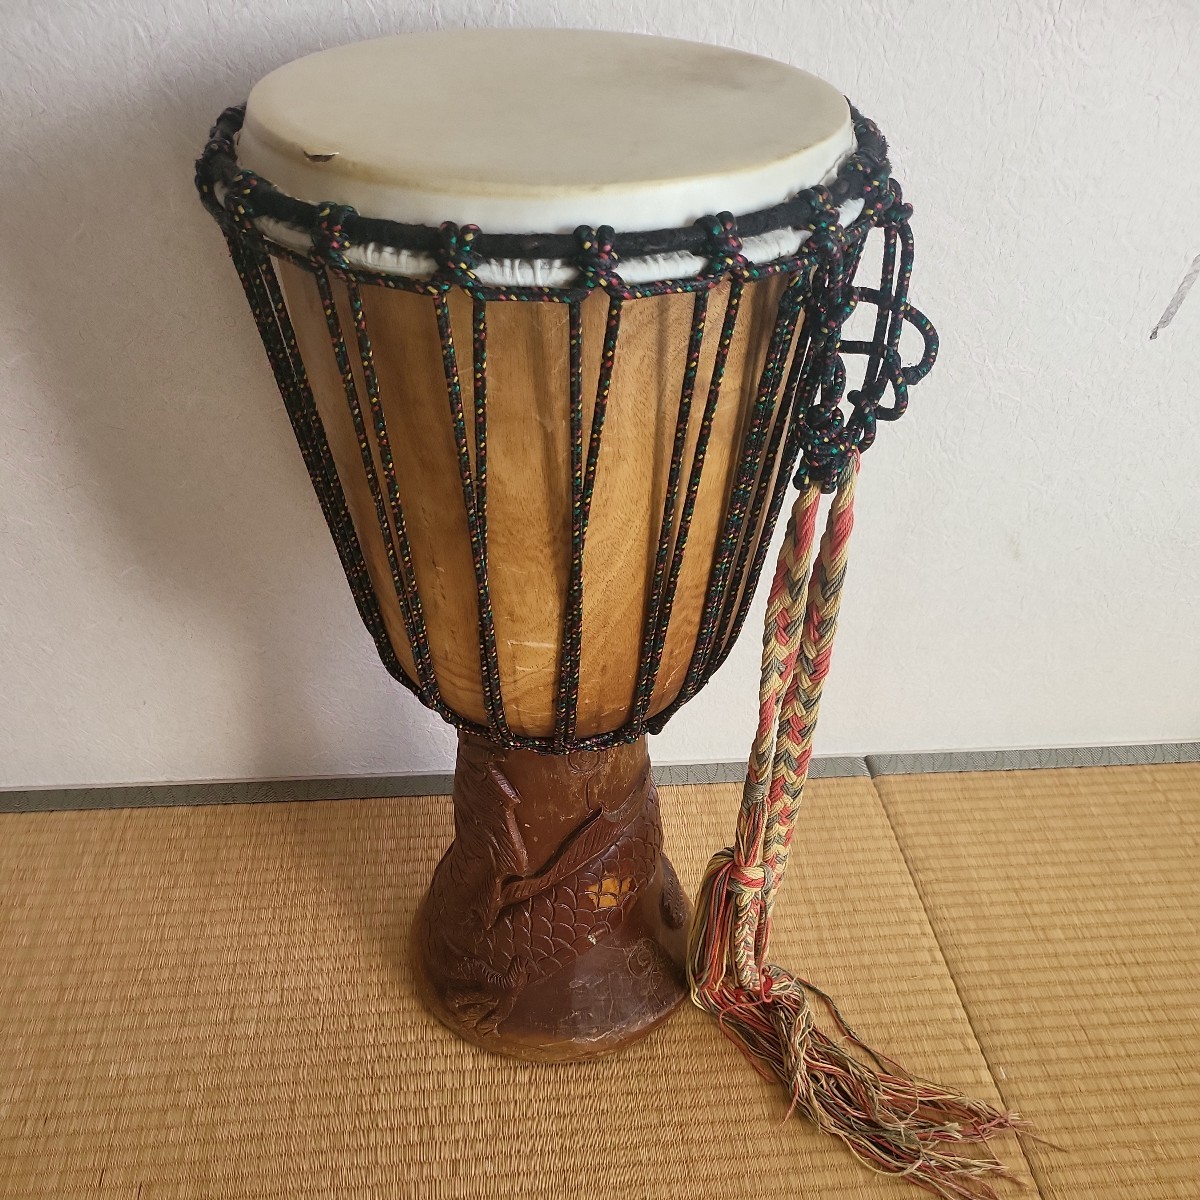  Africa этнический музыкальный инструмент ударные инструменты ударный инструмент Jean be высота примерно 60 см диаметр 30 см 